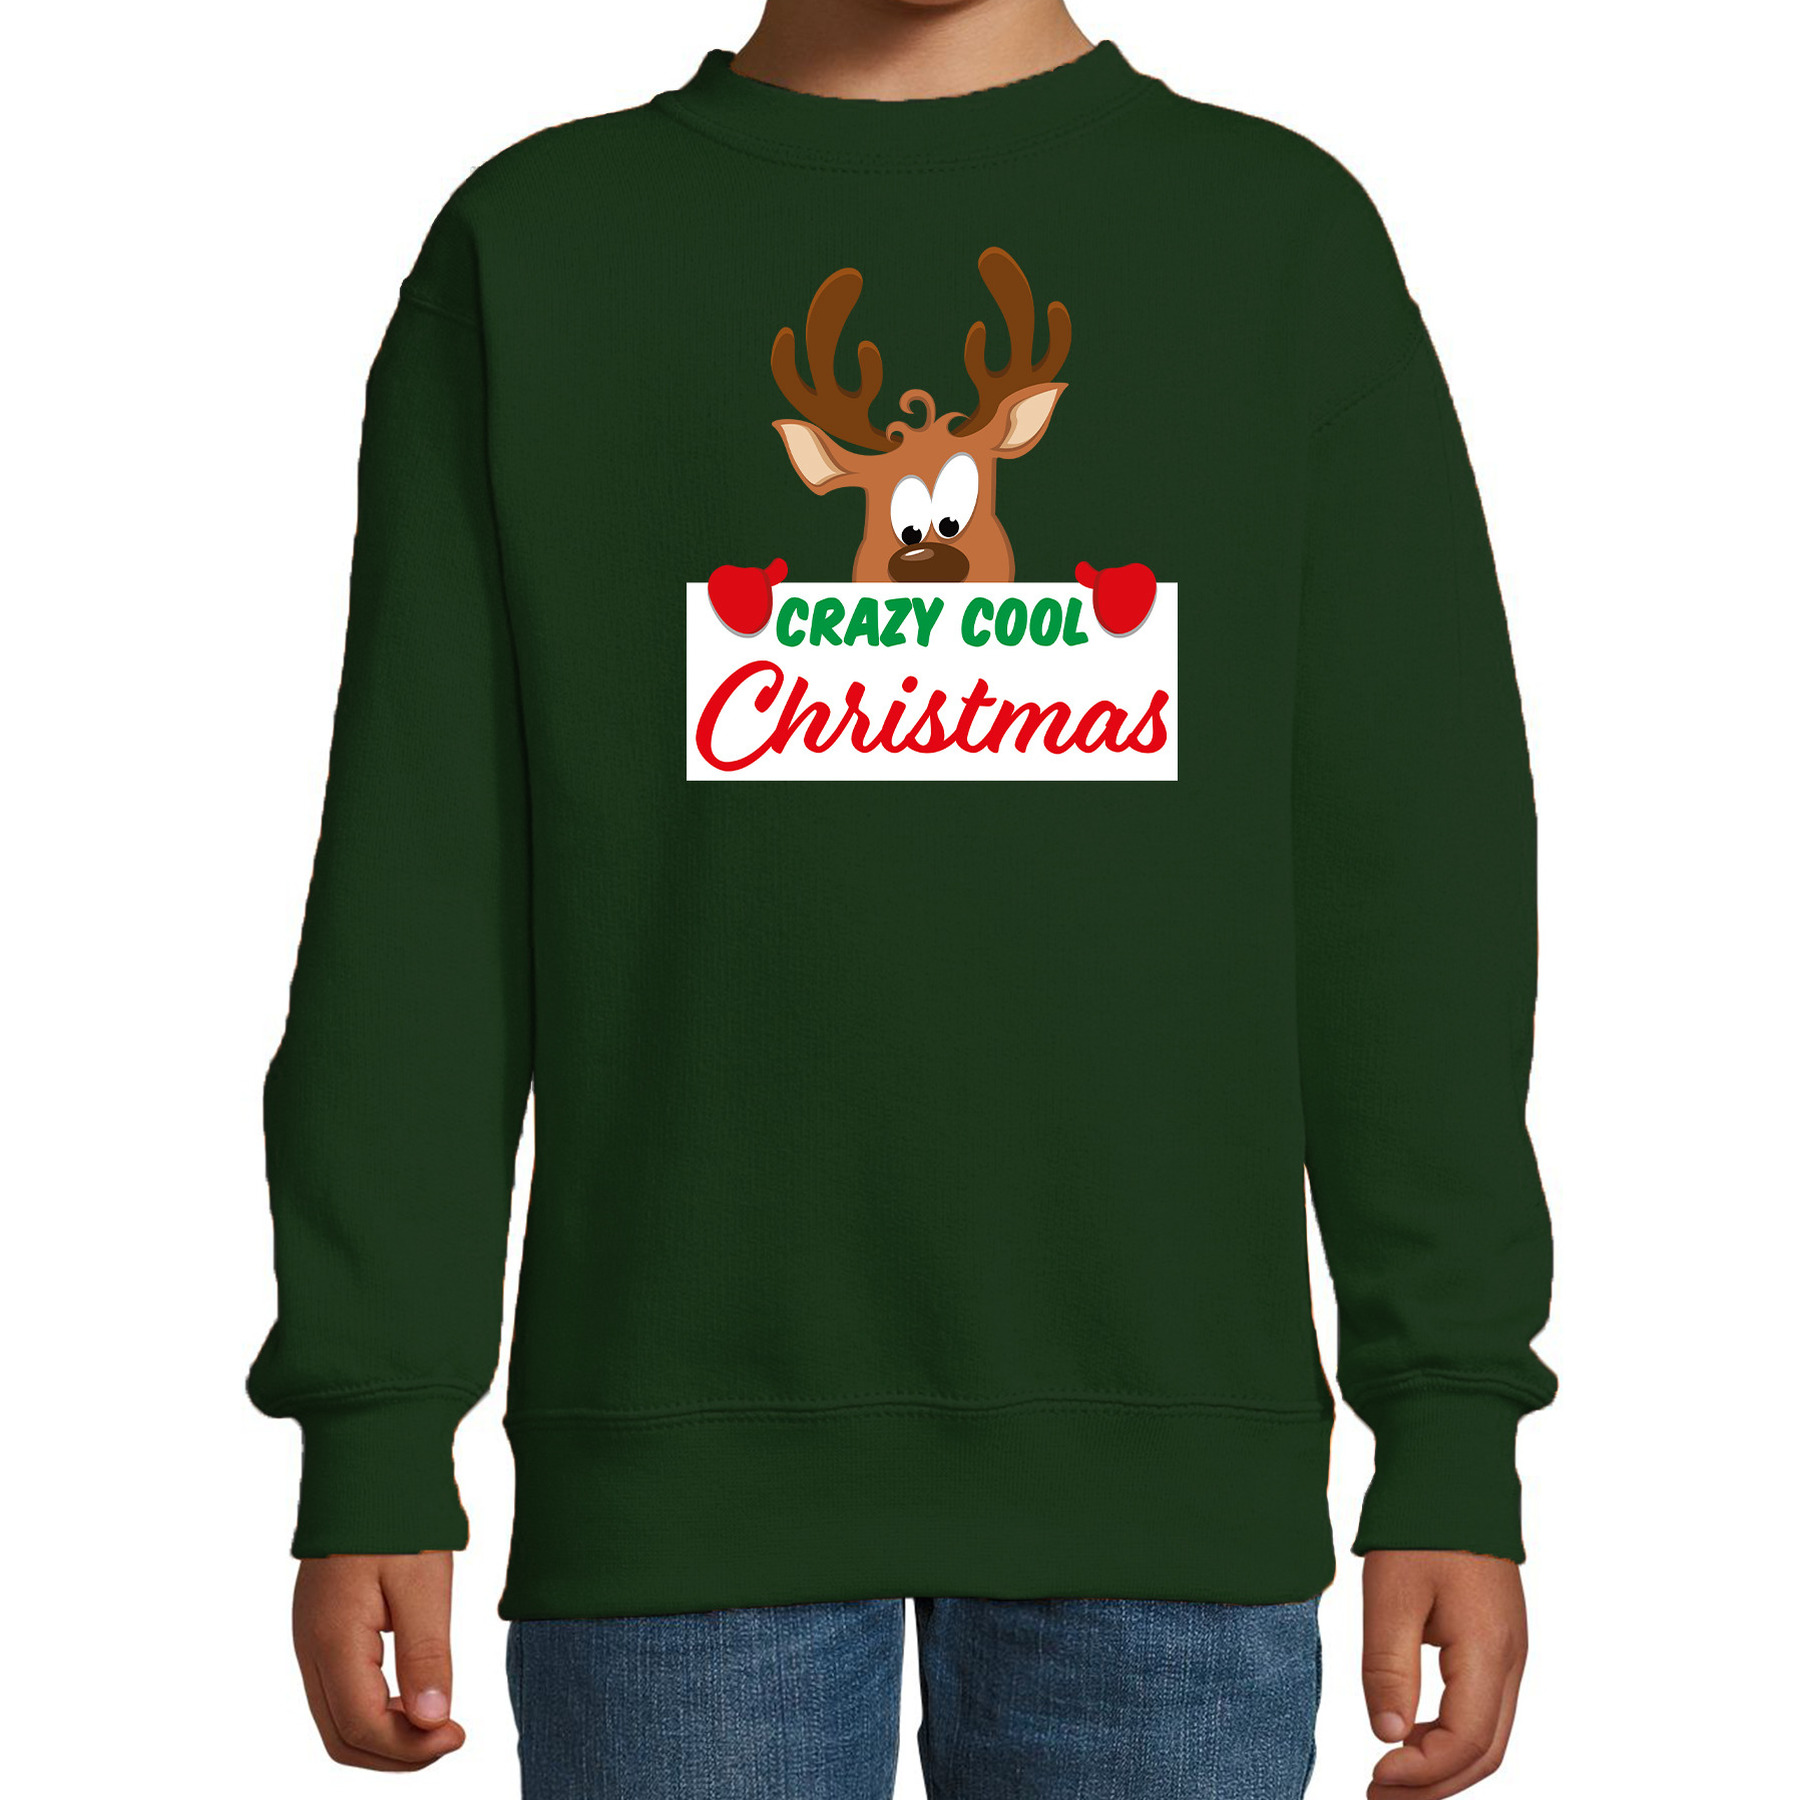 Crazy cool Christmas Kerstsweater-Kersttrui groen voor kinderen